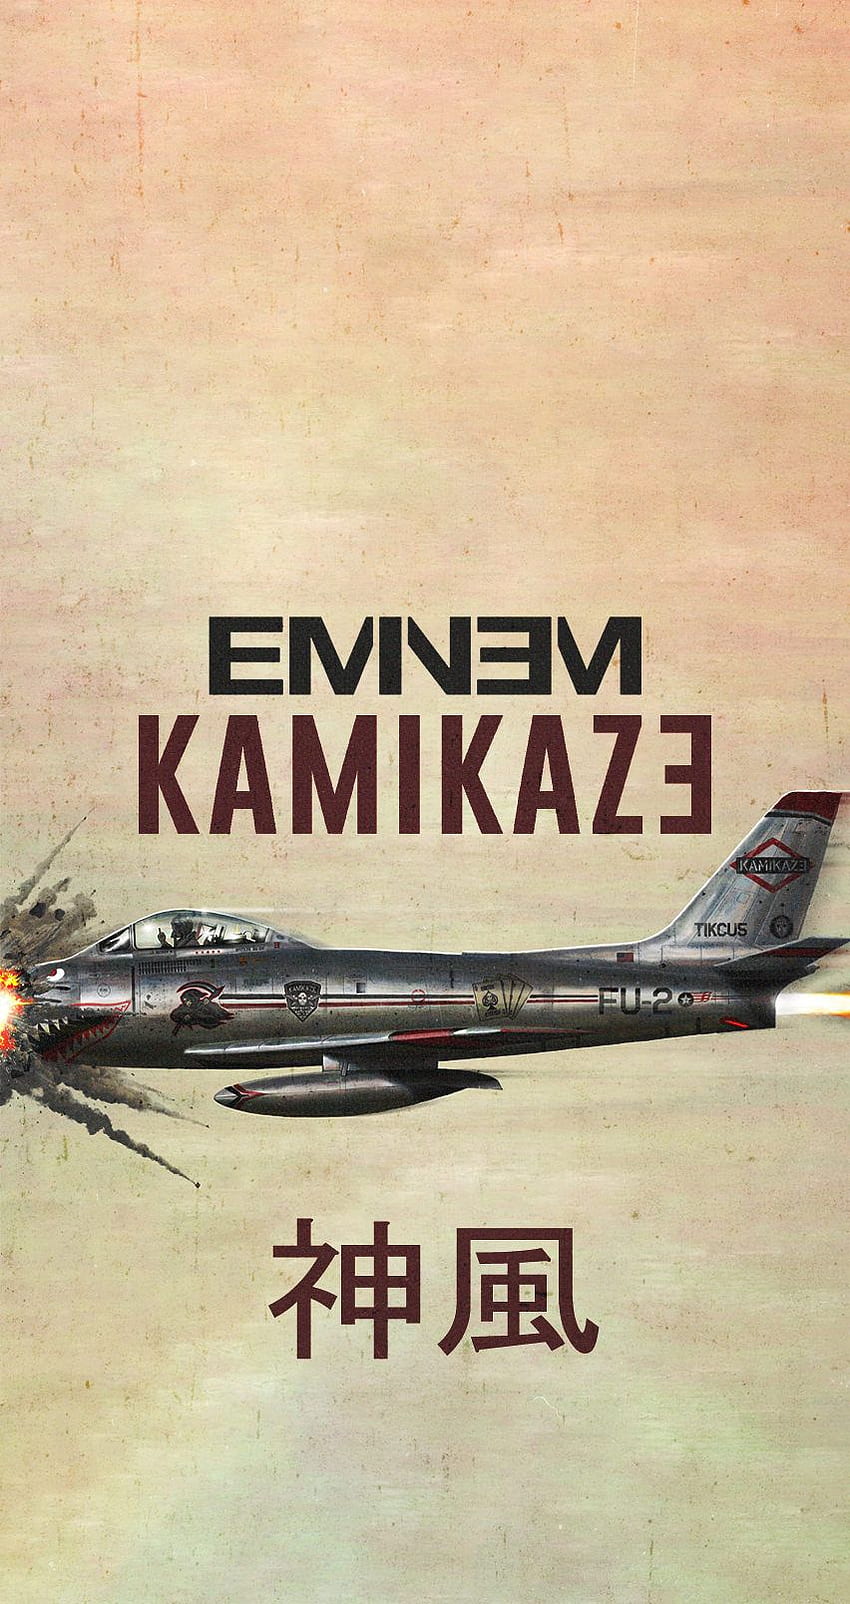 Eminem Kamikaze HD phone wallpaper